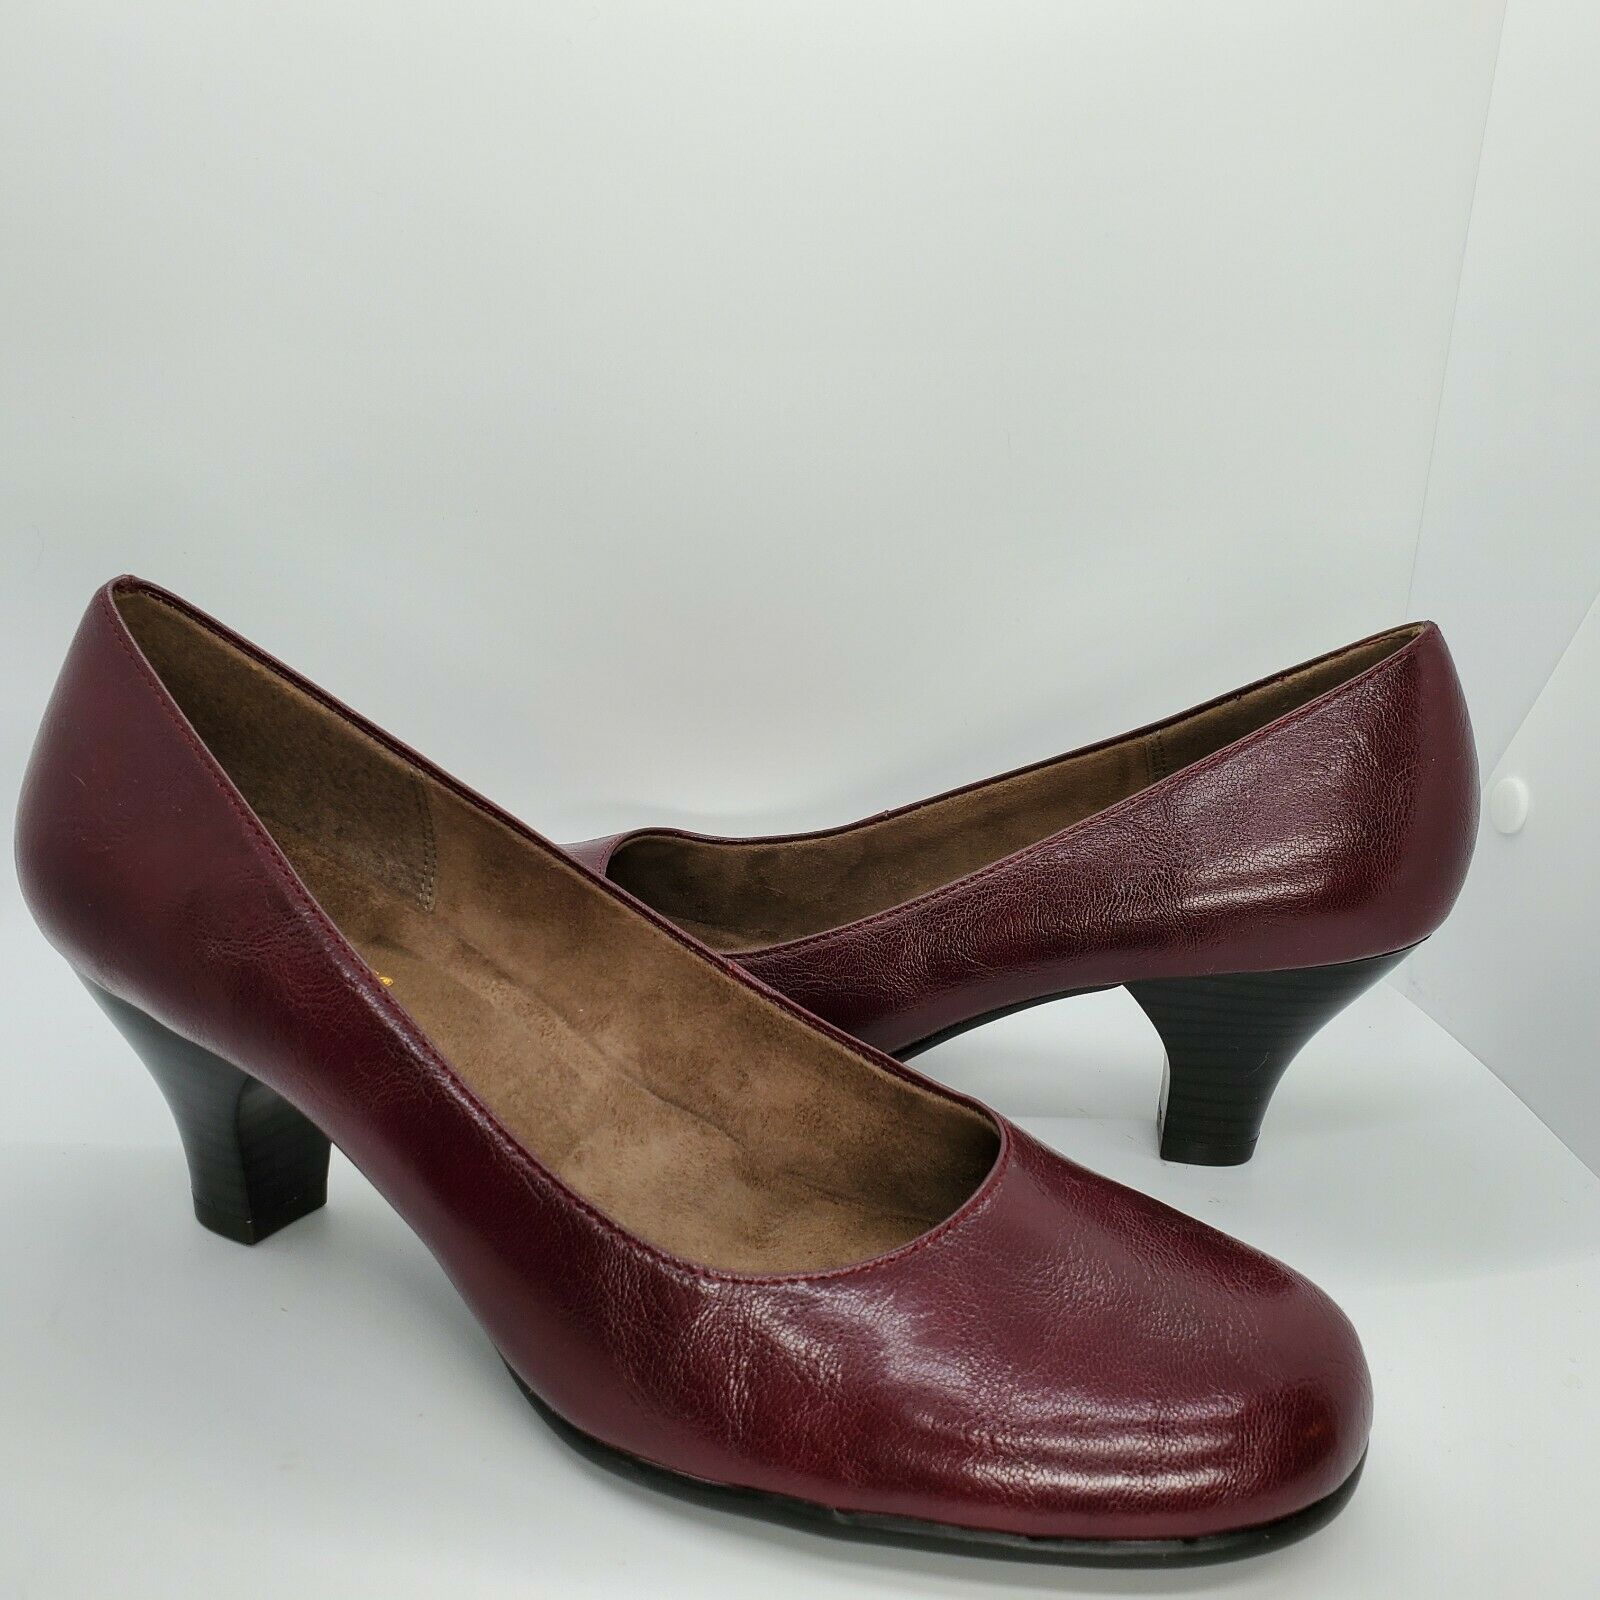 Aerosoles Heelrest Size 9.5 M Maroon Red Block Heel Pumps Shoes 9 1/2